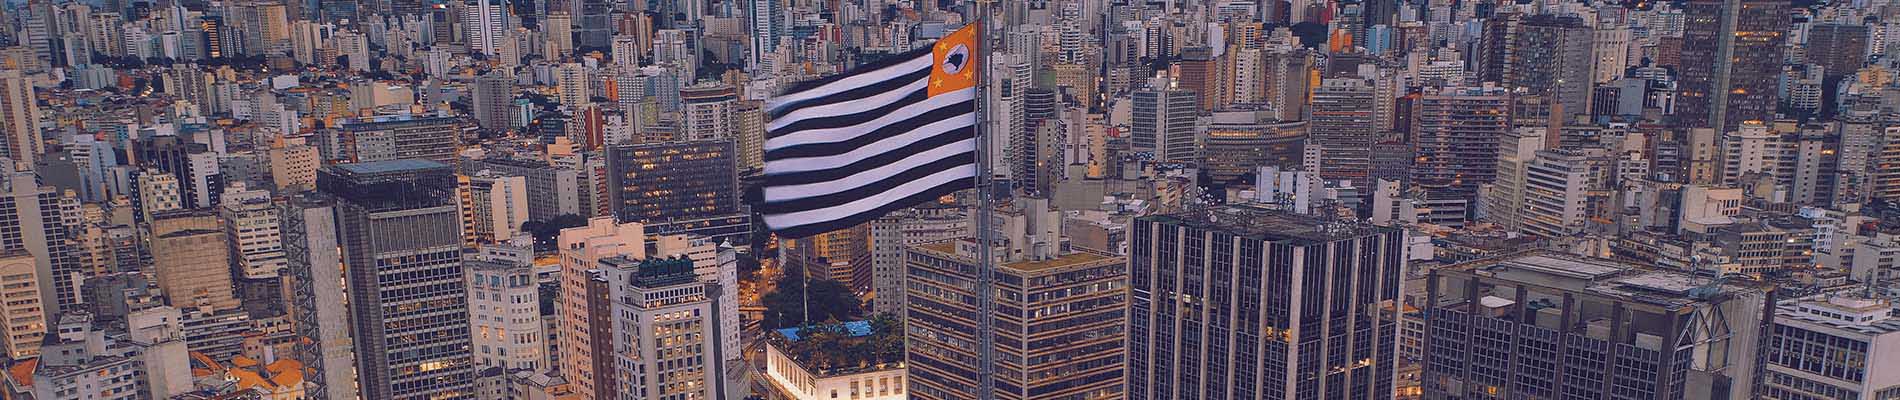 Vista de prédios e da bandeira de São Paulo